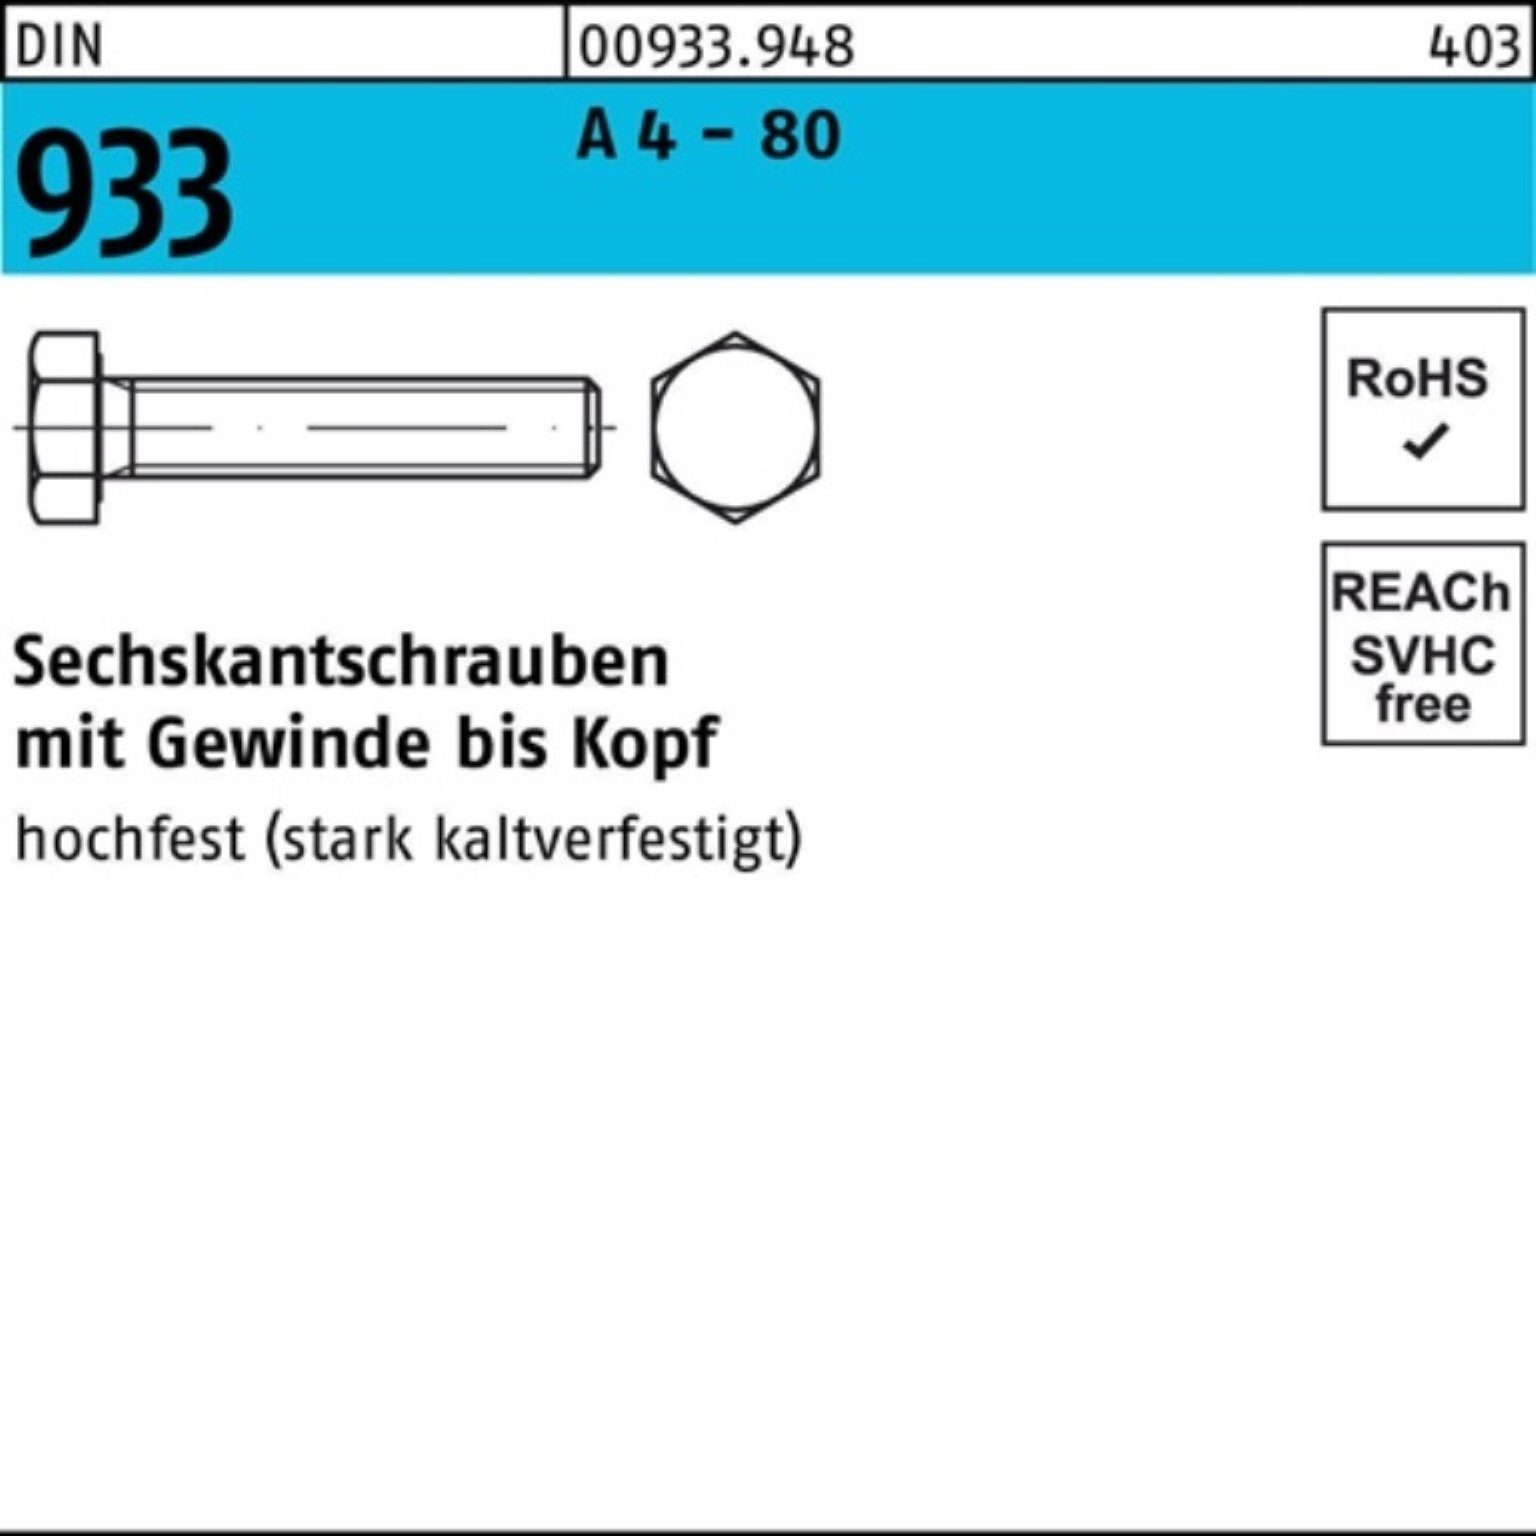 Reyher Sechskantschraube 100er Pack Sechskantschraube DIN 933 VG M16x 50 A 4 - 80 25 Stück DIN